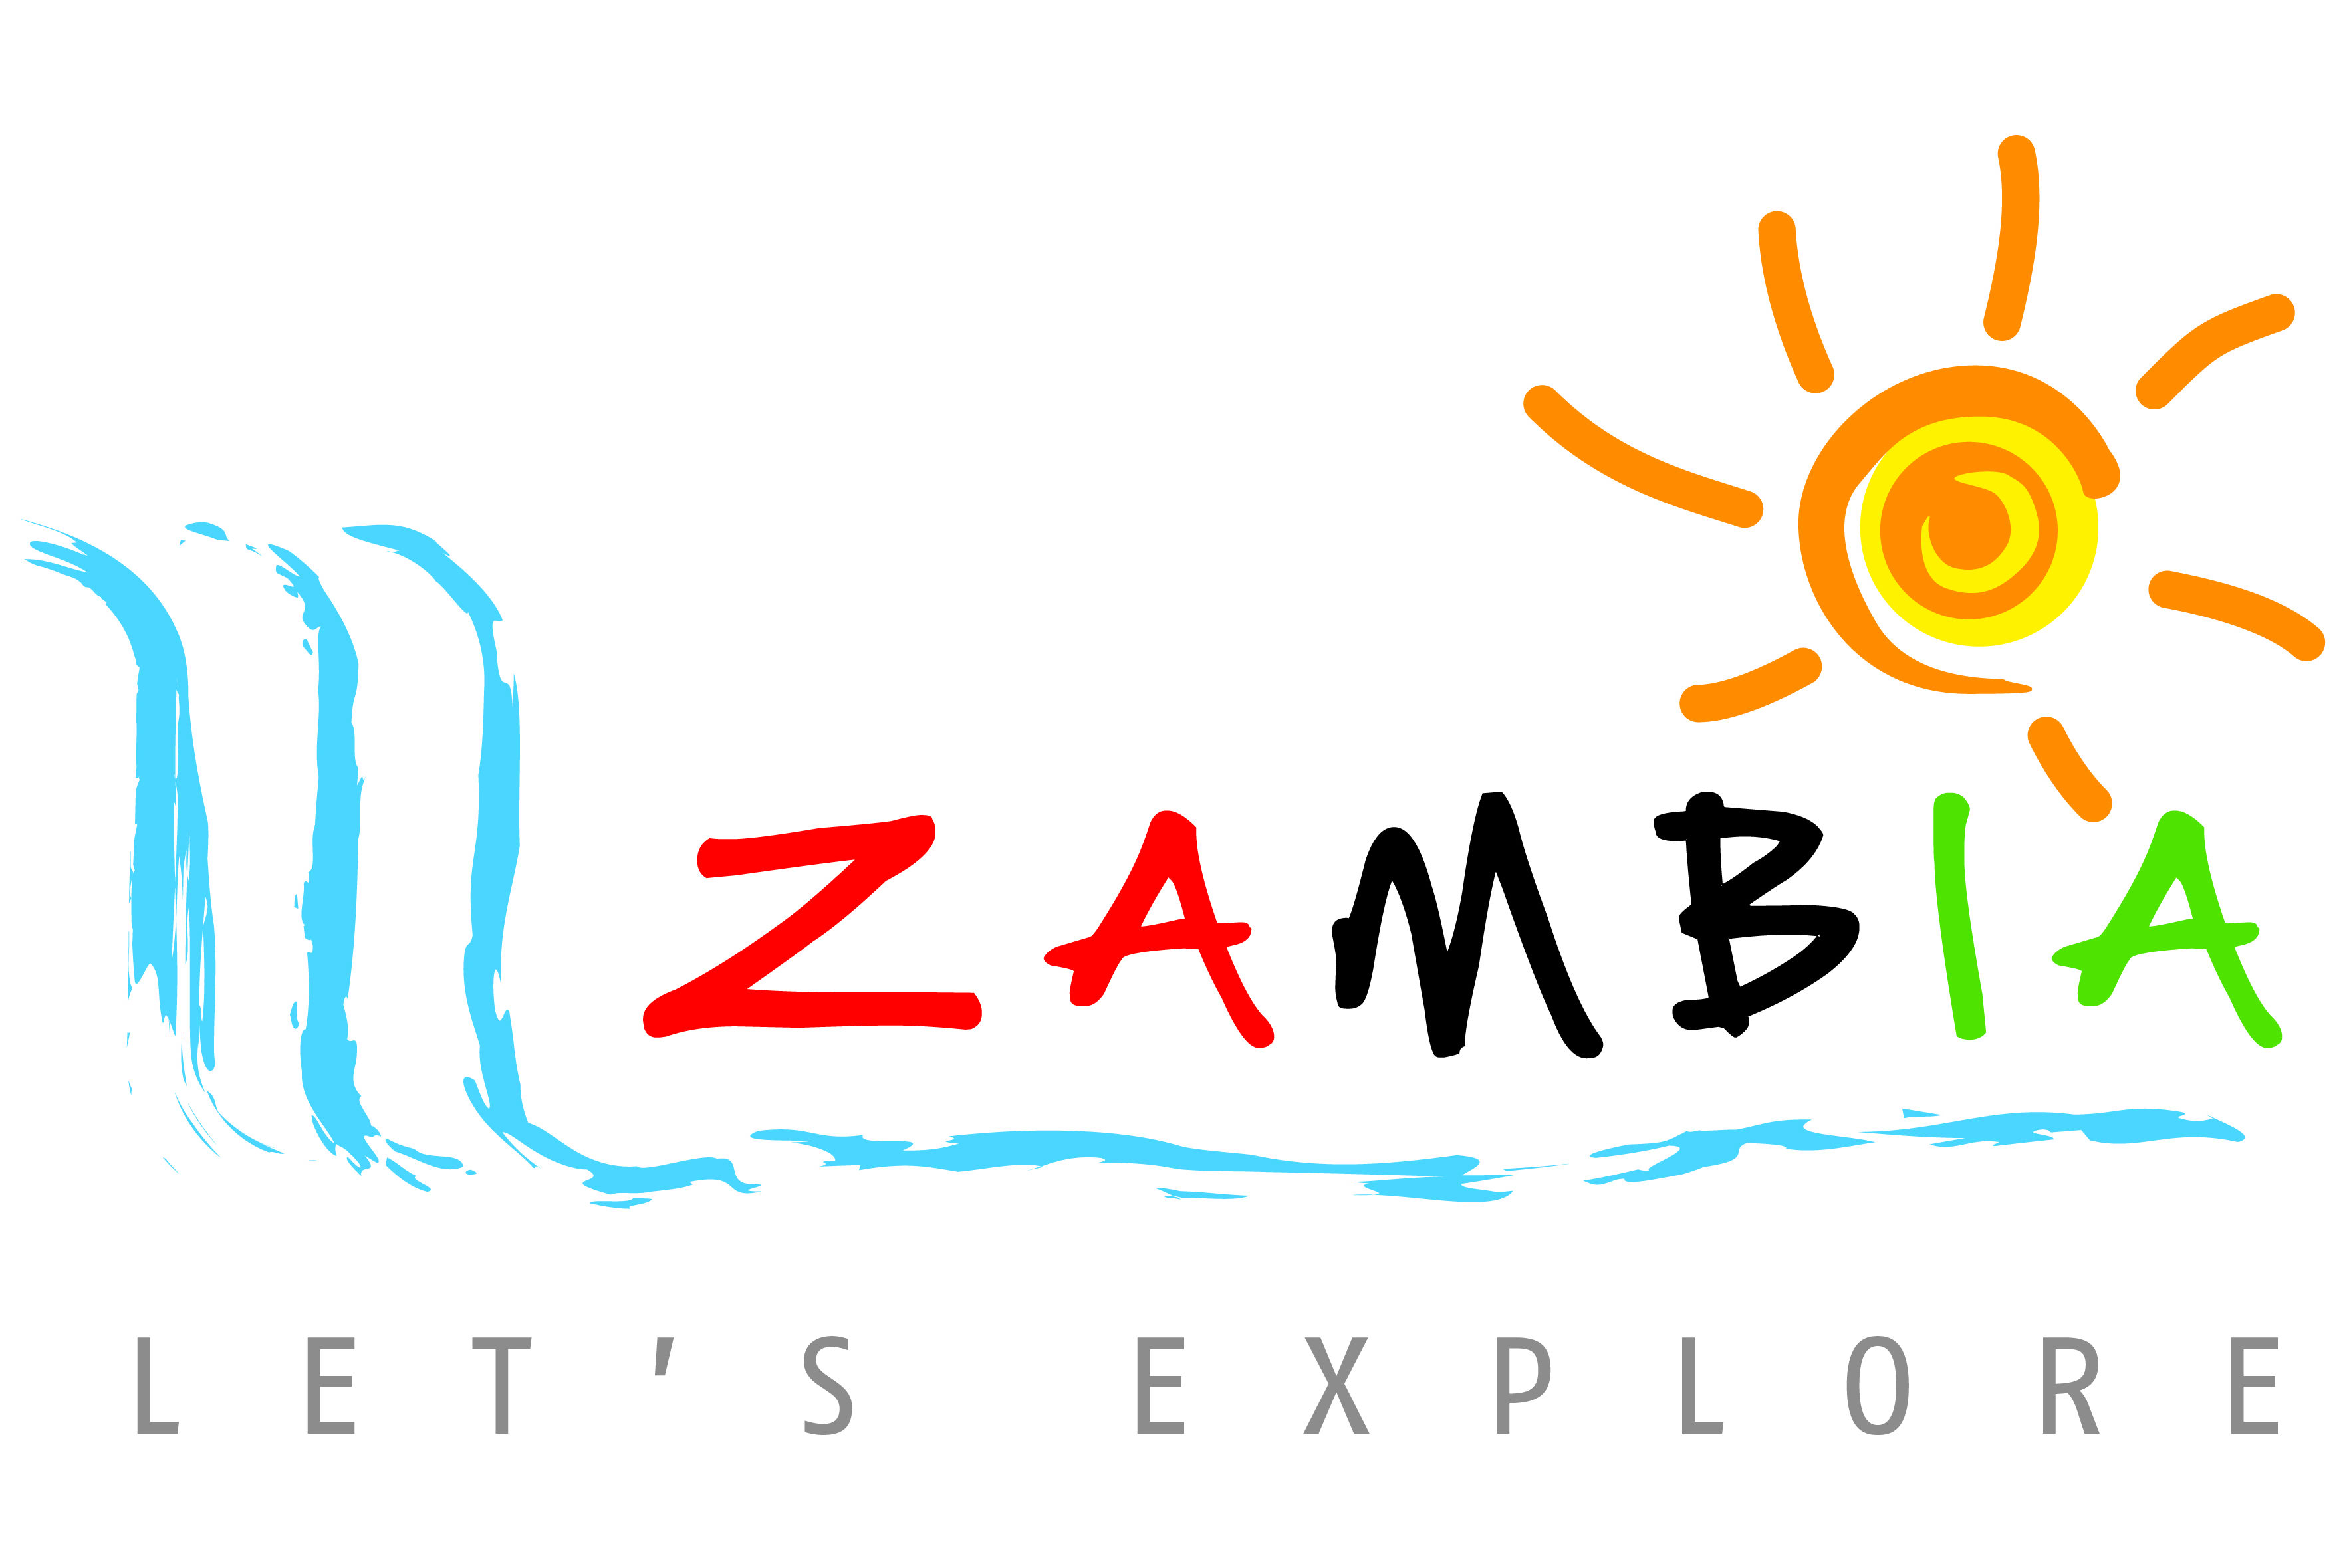 tourism agency zambia